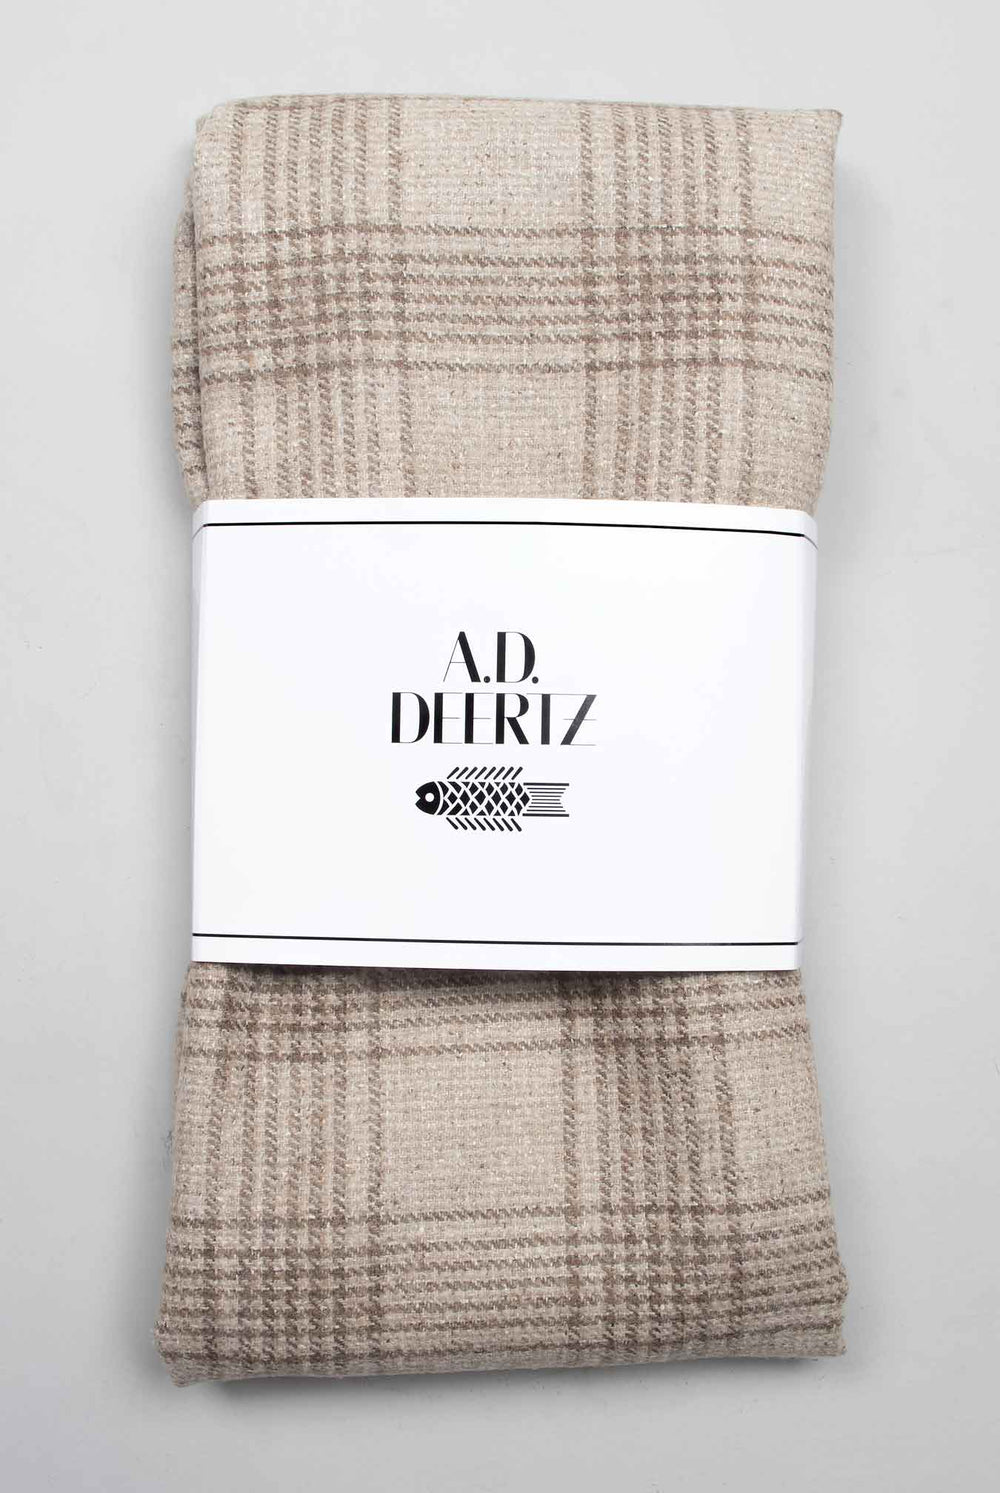 beige checks supersoft wool scarf ADDeertz menswear folded in package